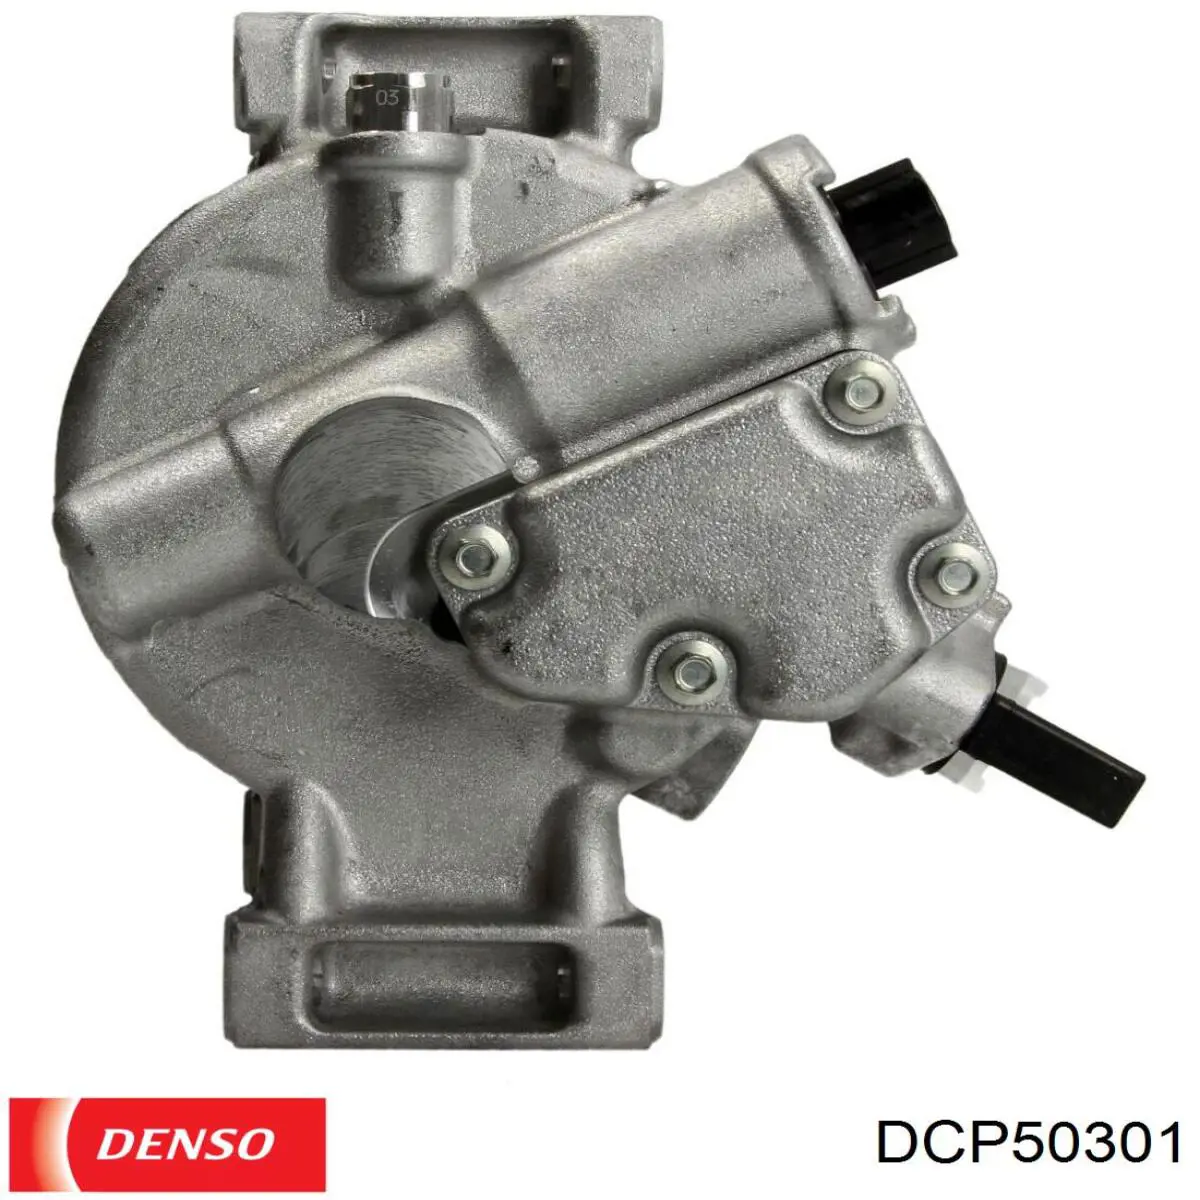 DCP50301 Denso compresor de aire acondicionado